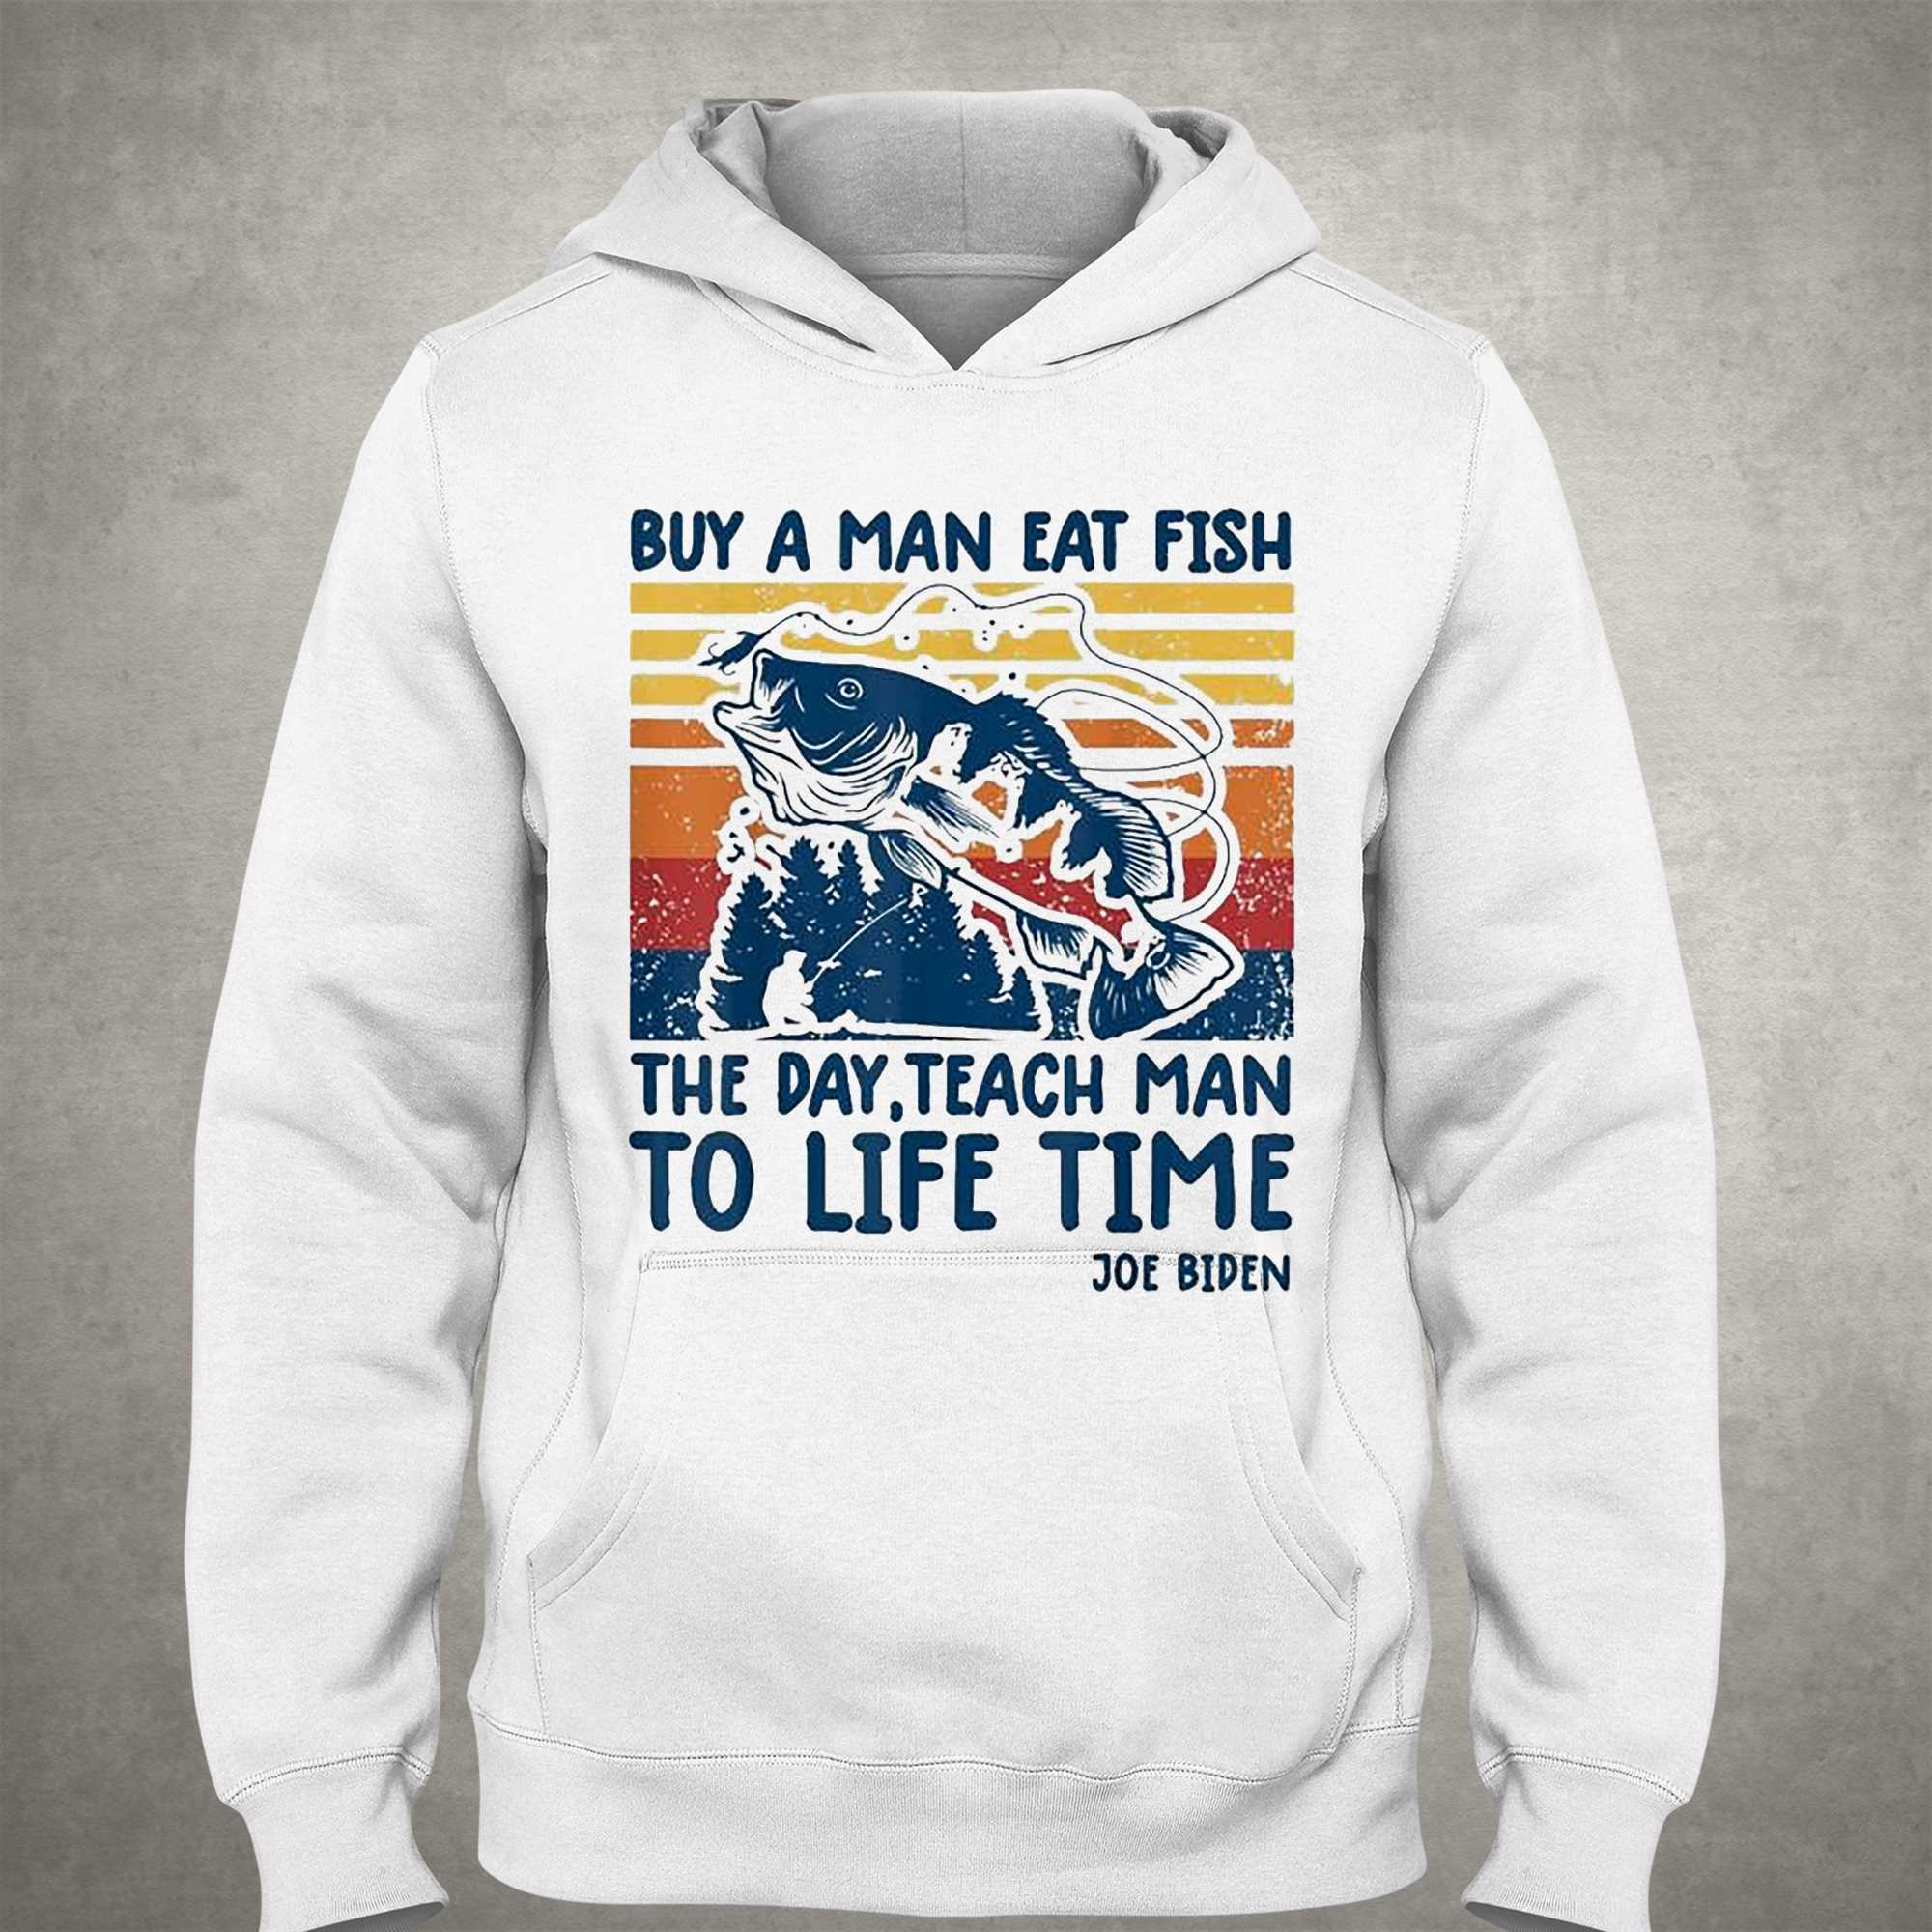 Joe Biden Quote T-shirt Buy A Man Eat Fish T-shirt Fishing Vintage T-shirt 